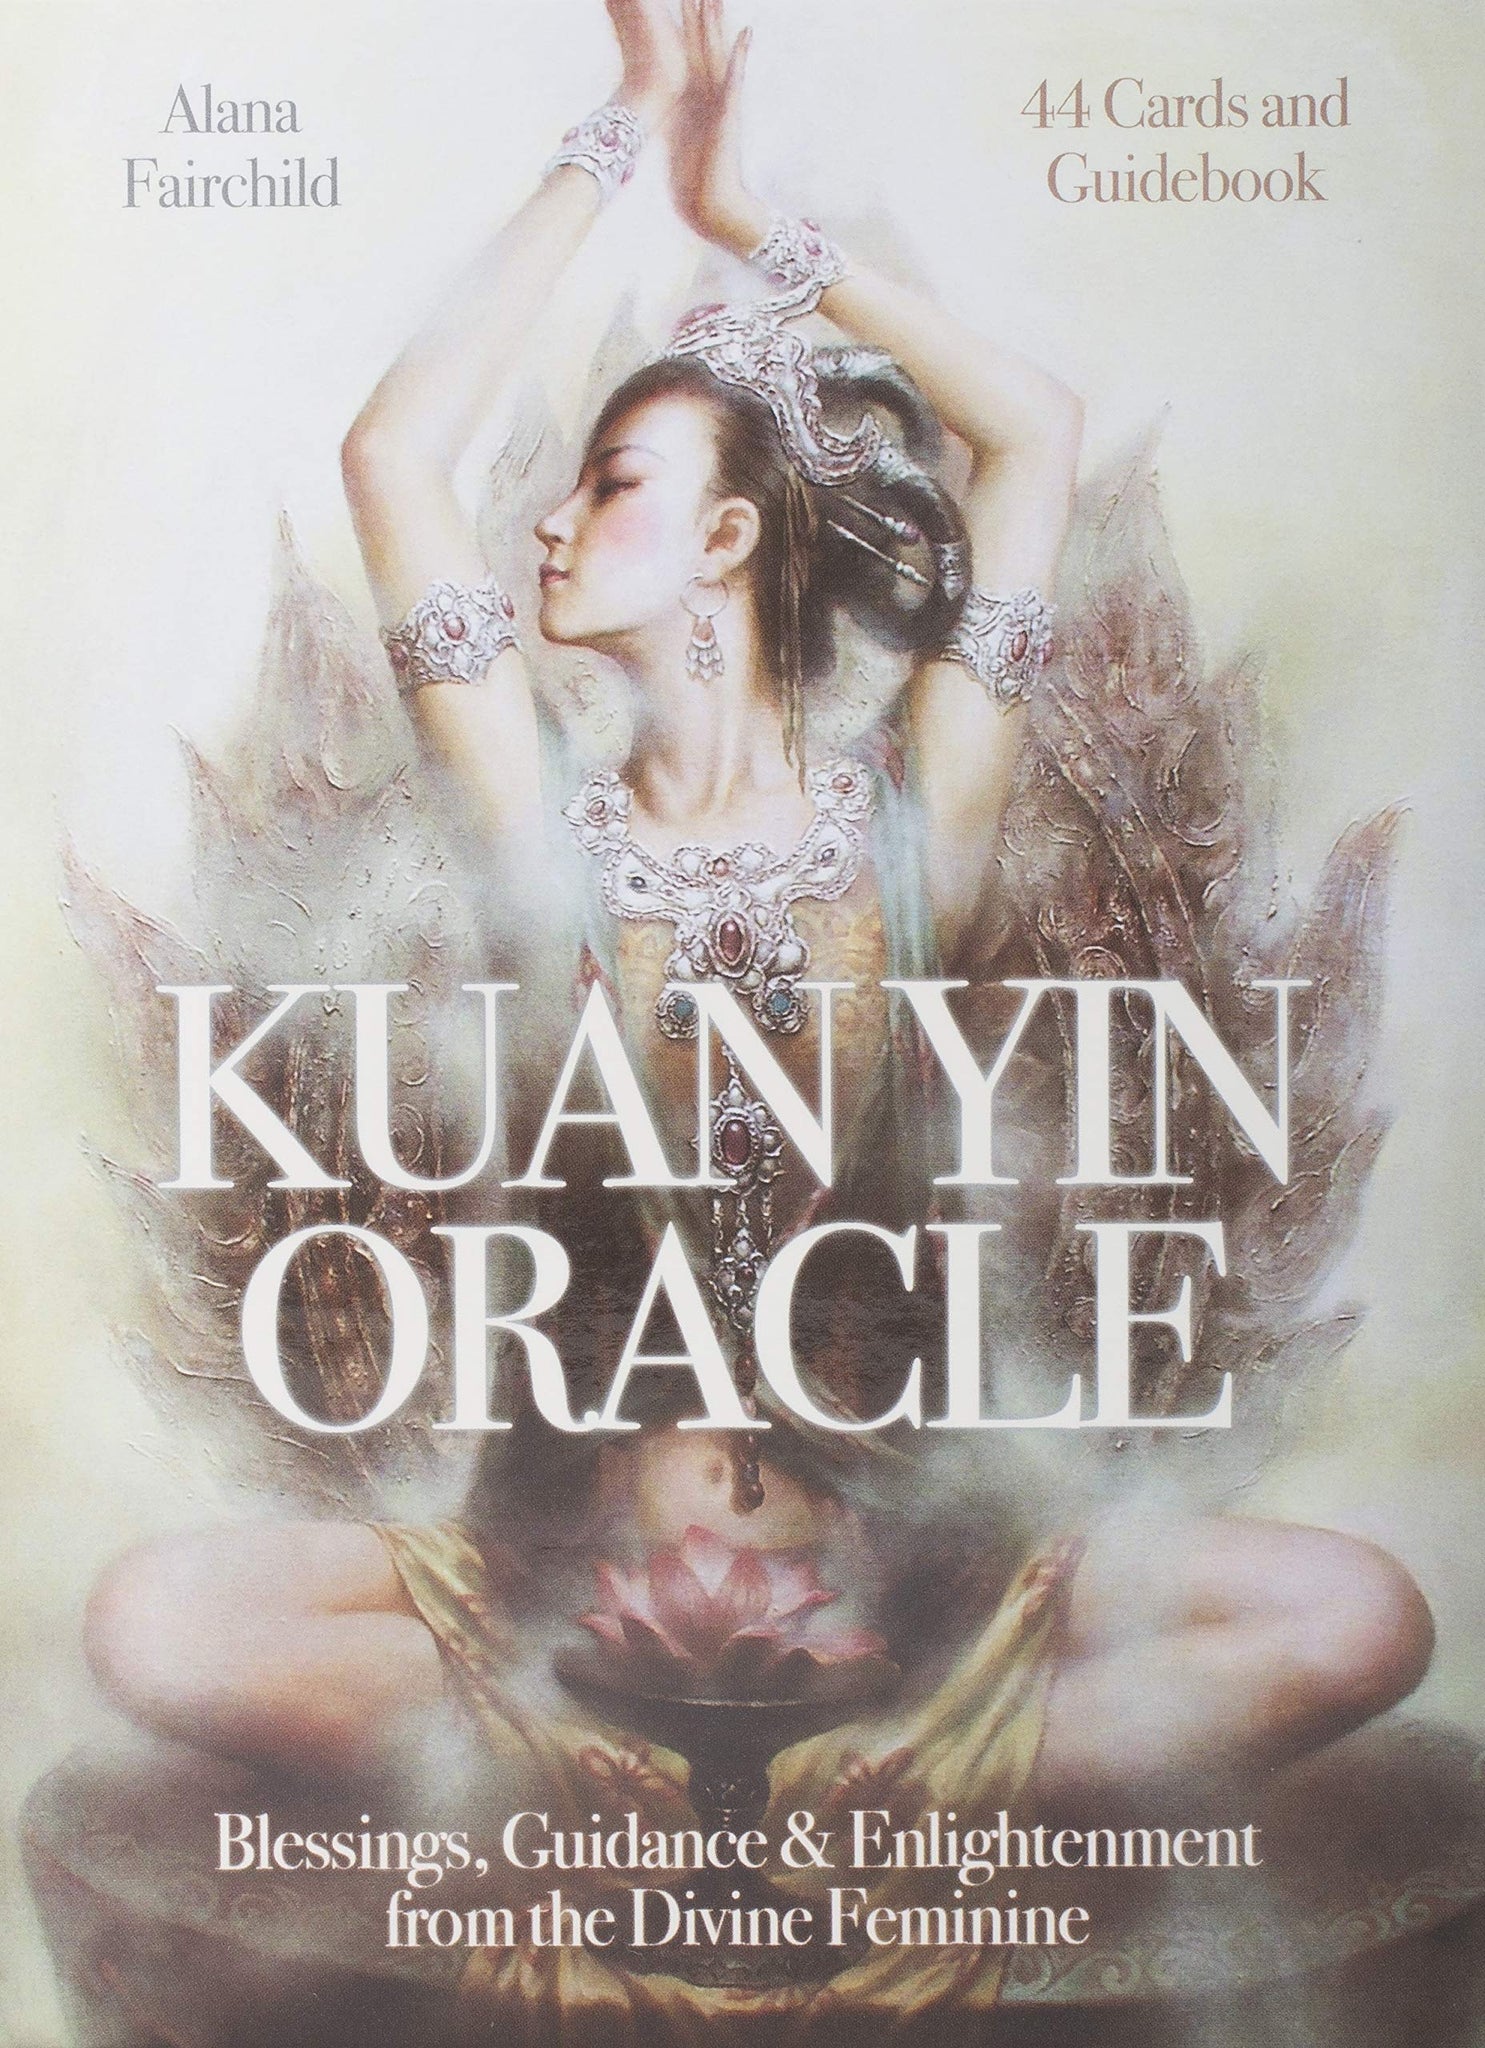 Kuan Yin Oracle by Alana Fairchild - art by Zeng Hao